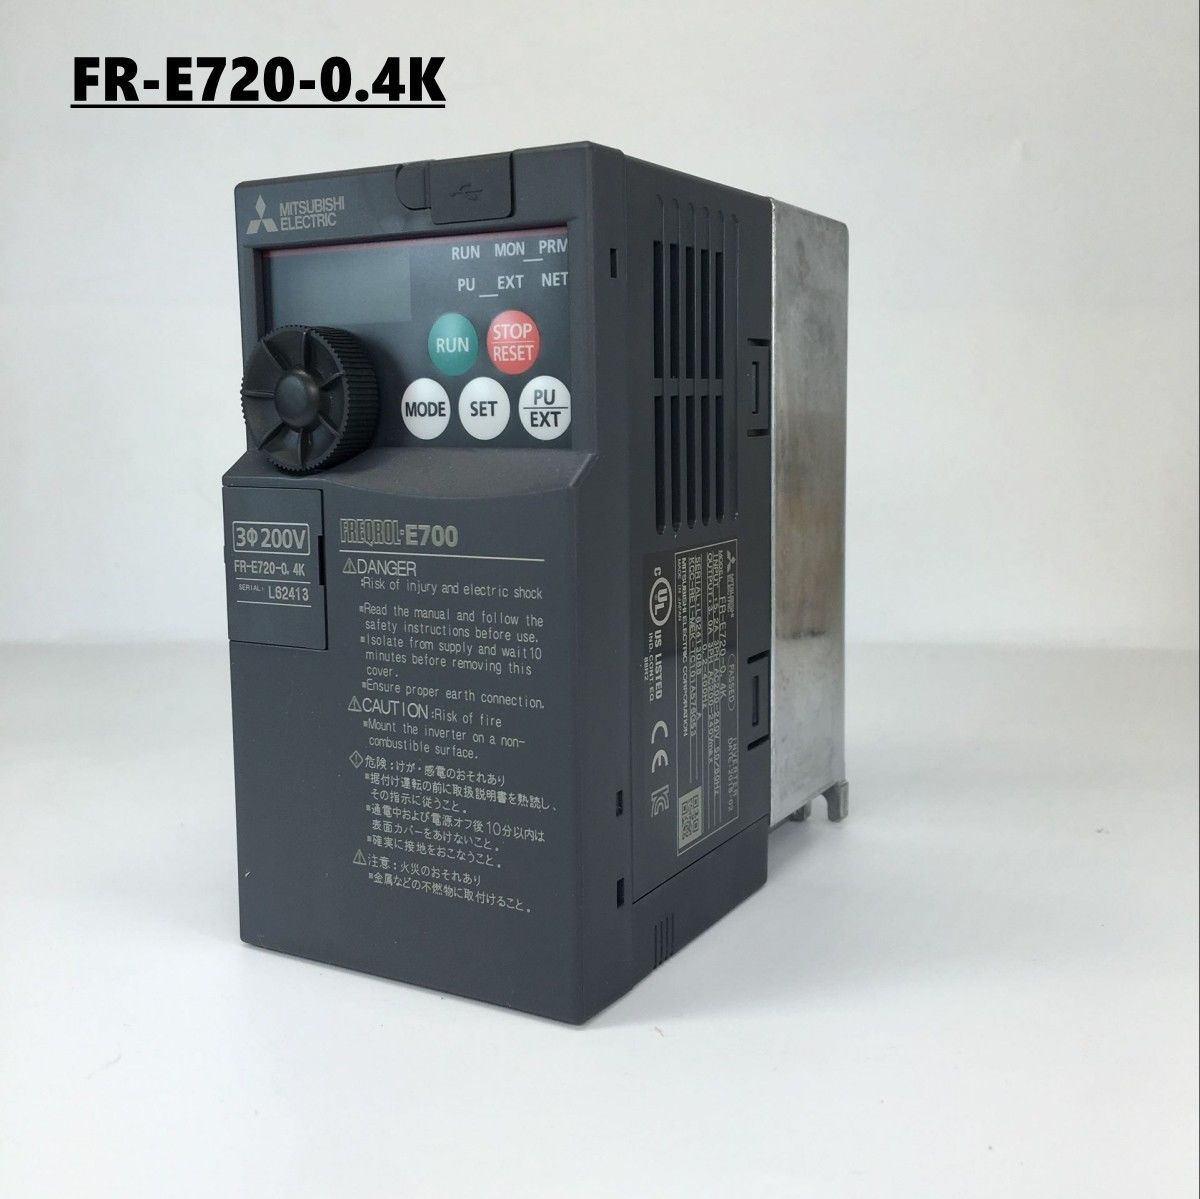 Brand New MITSUBISHI inverter FR-E720-0.4K In Box FRE7200.4K - Click Image to Close